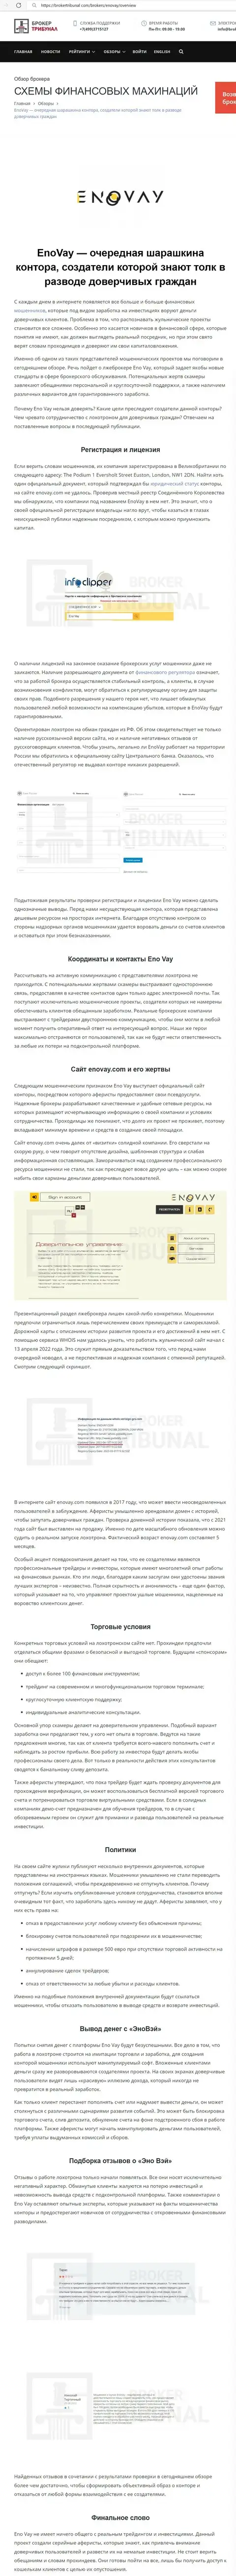 РАБОТАТЬ КРАЙНЕ ОПАСНО - публикация с обзором мошенничества EnoVay Info